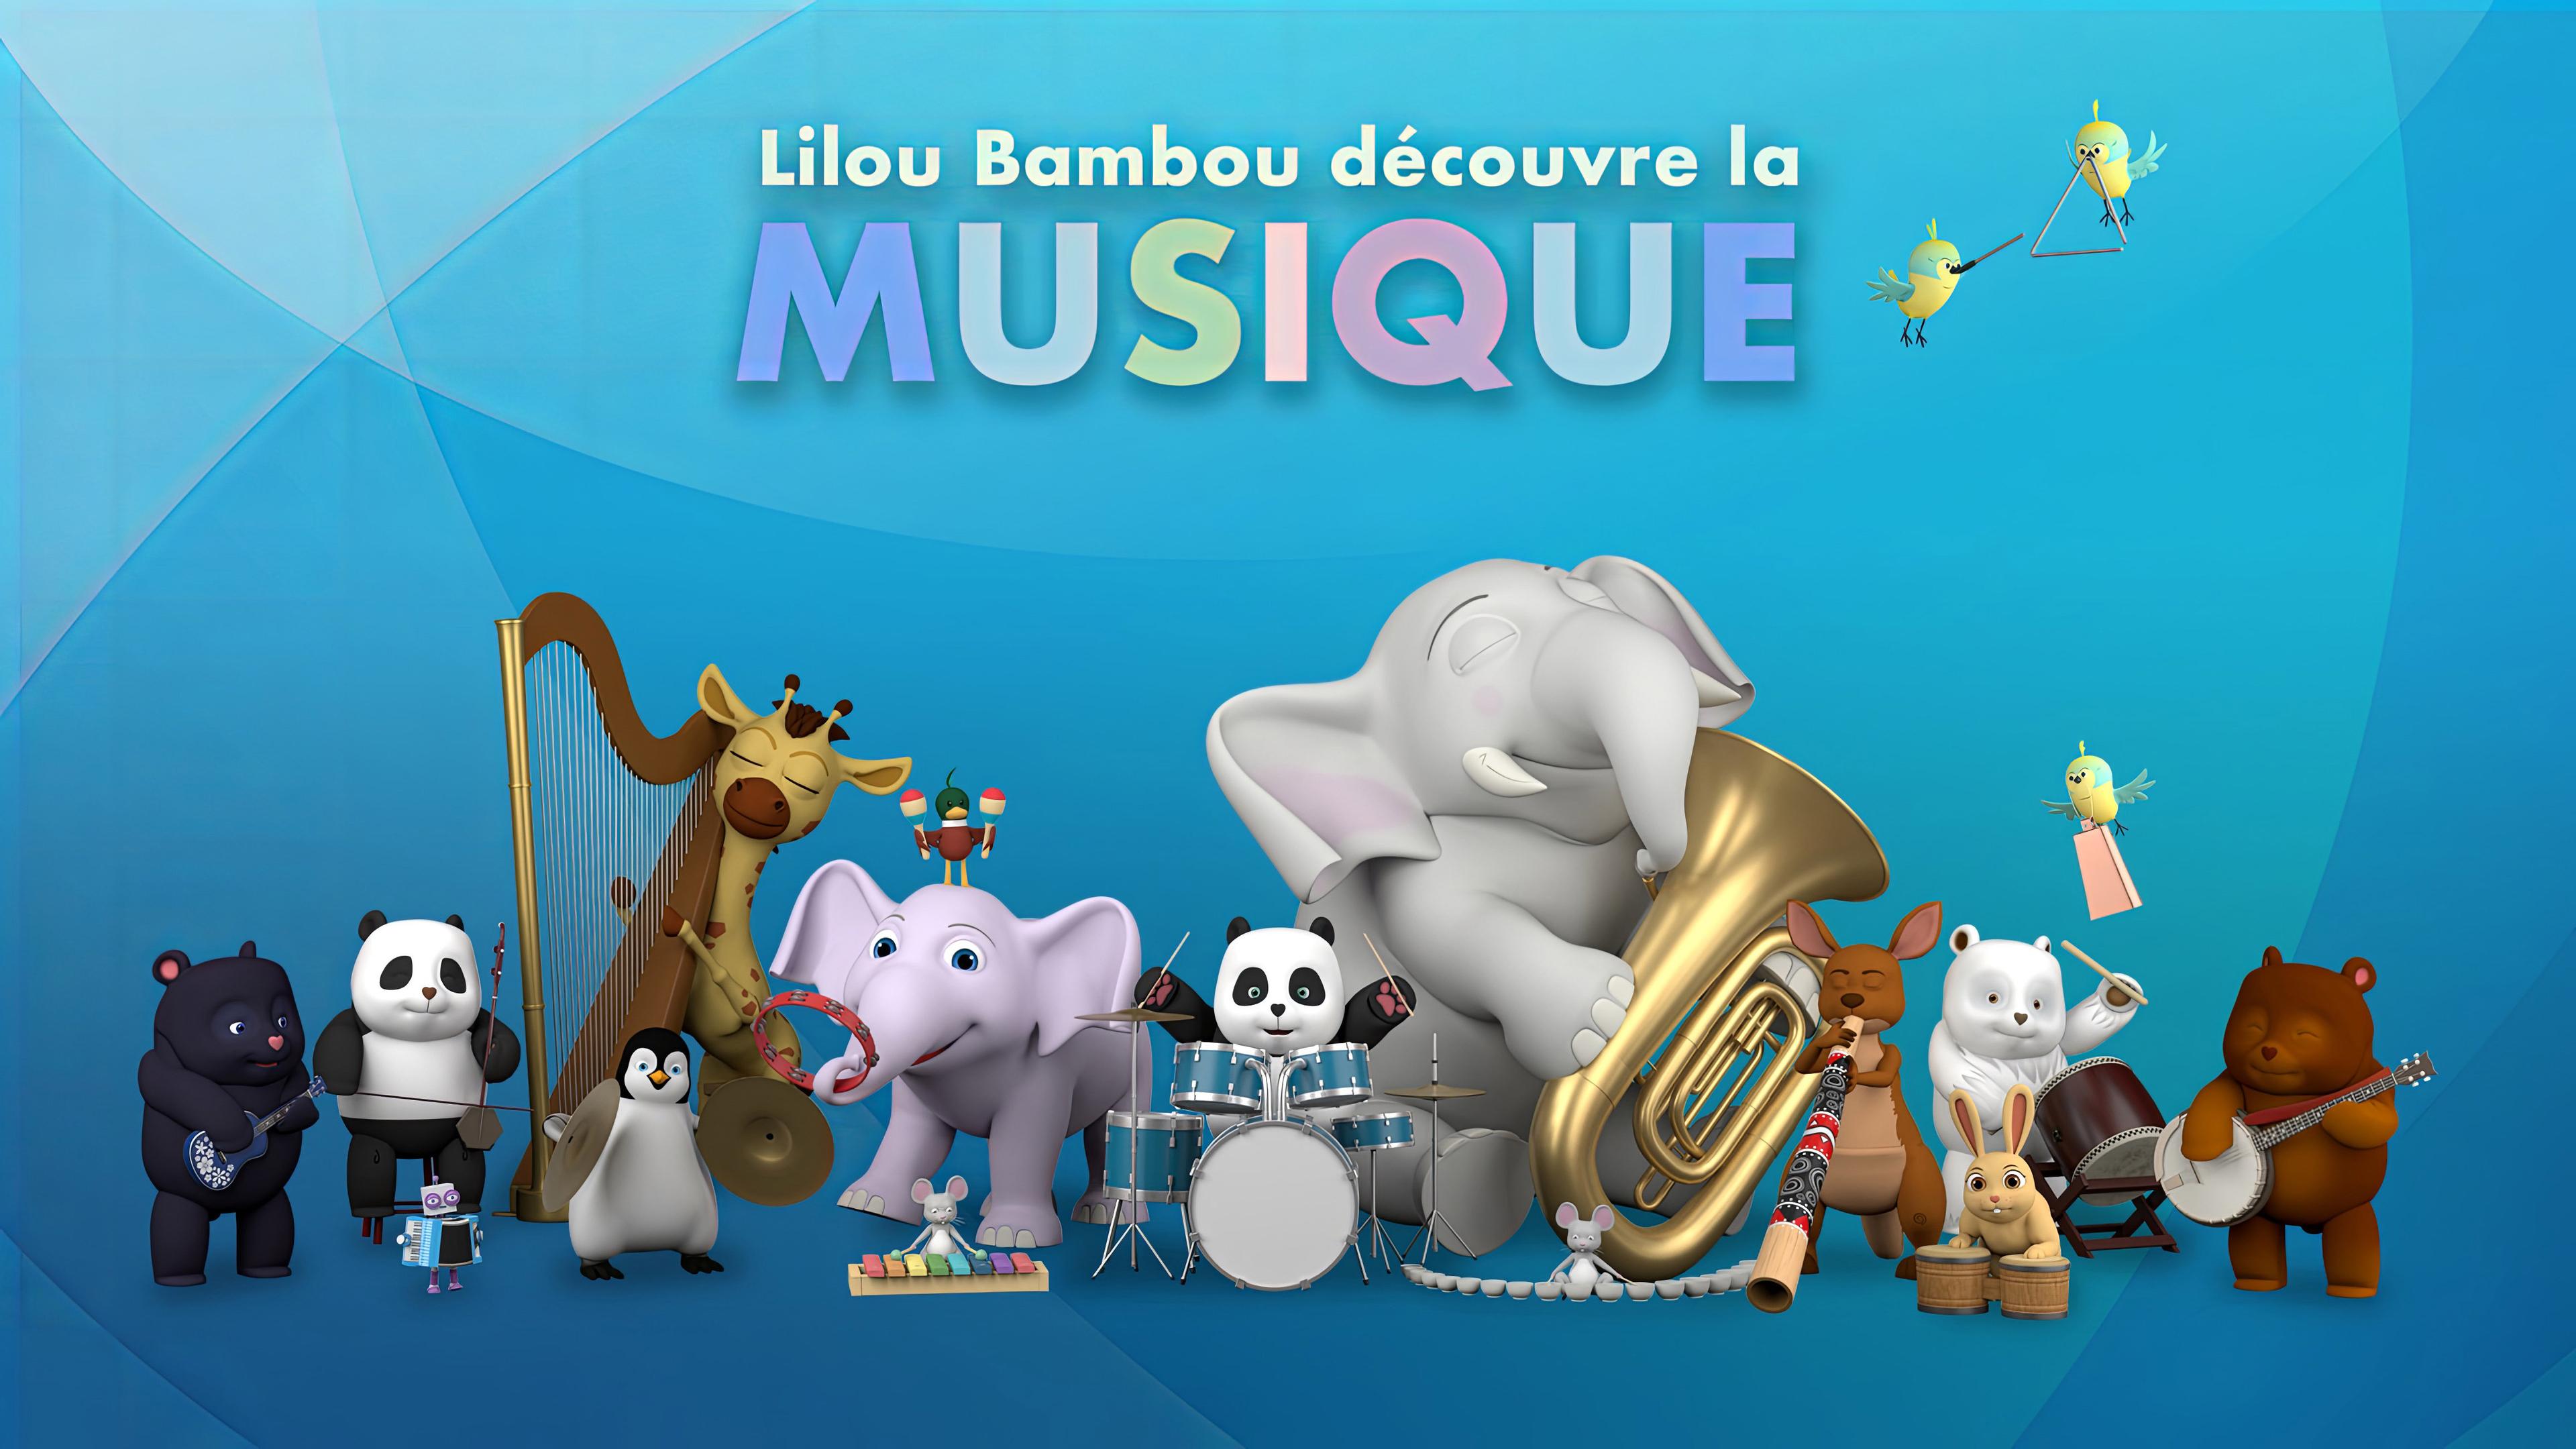 Lilou Bambou découvre la musique